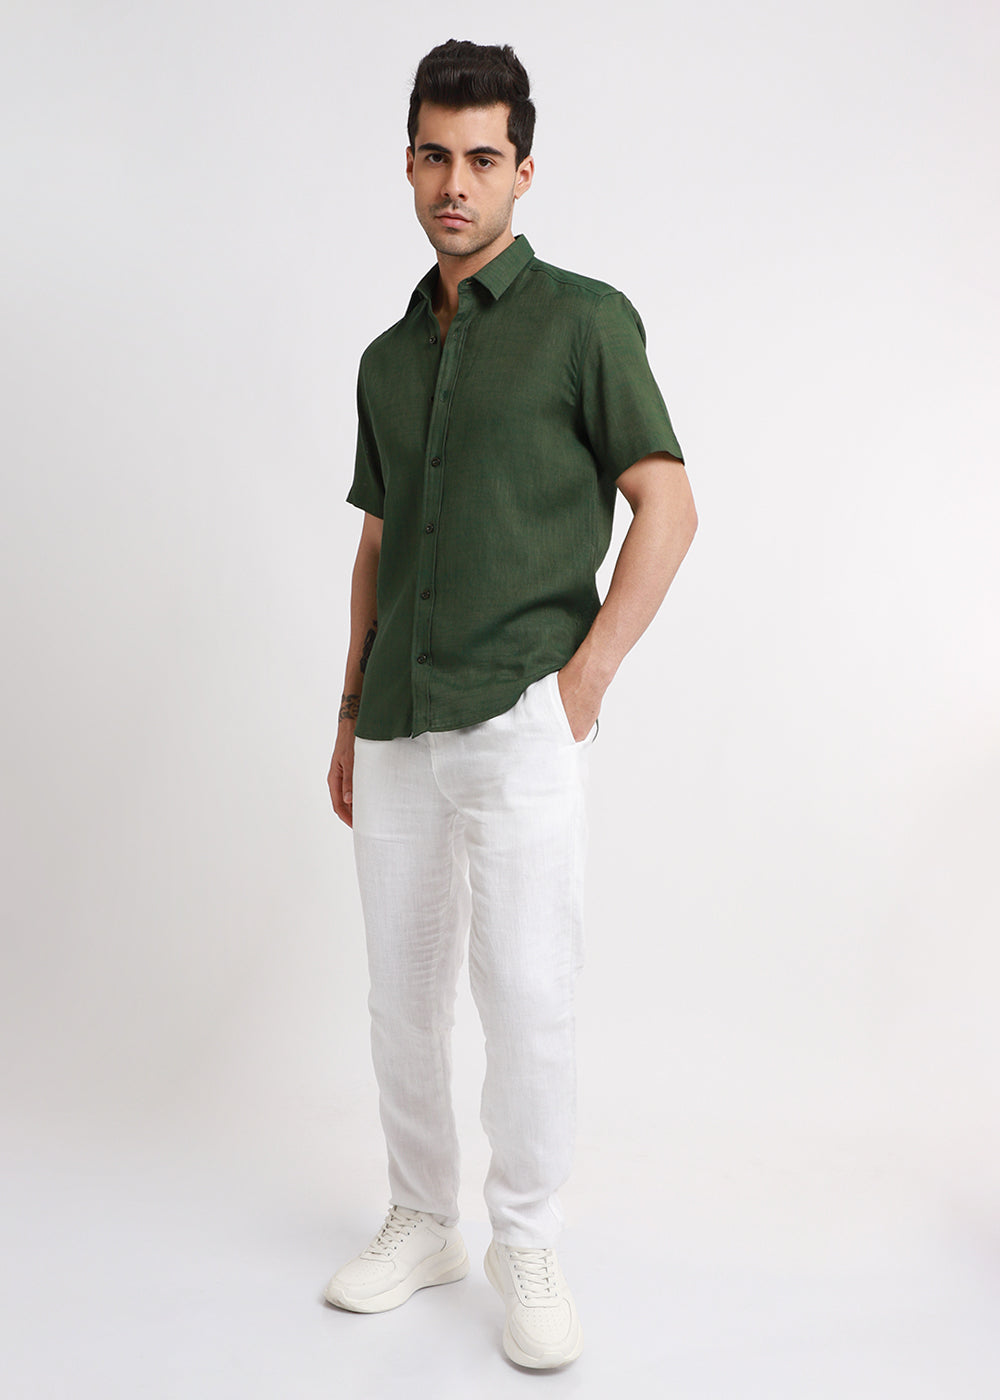 Batiste Green Linen shirt